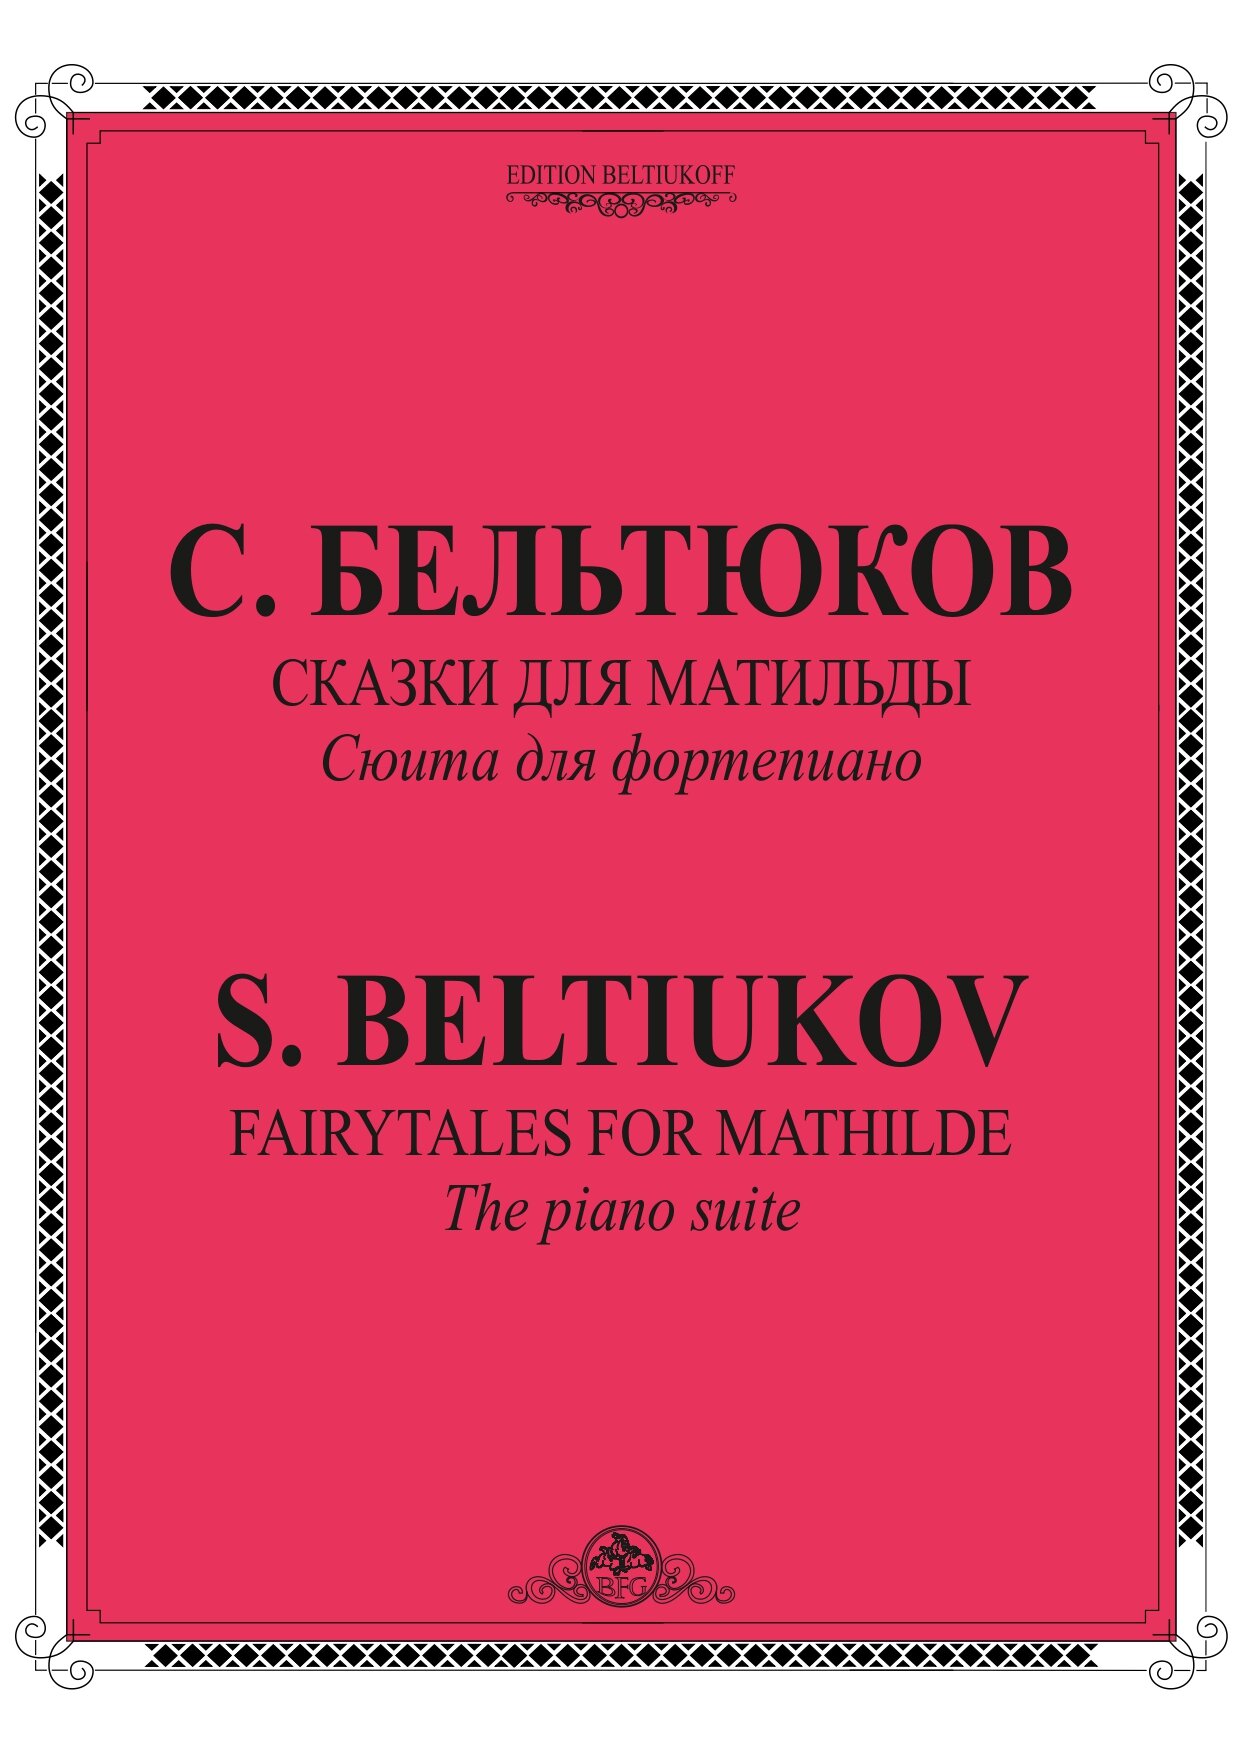 С. Бельтюков - Сказки для Матильды (2016)-1_page-0001.jpg